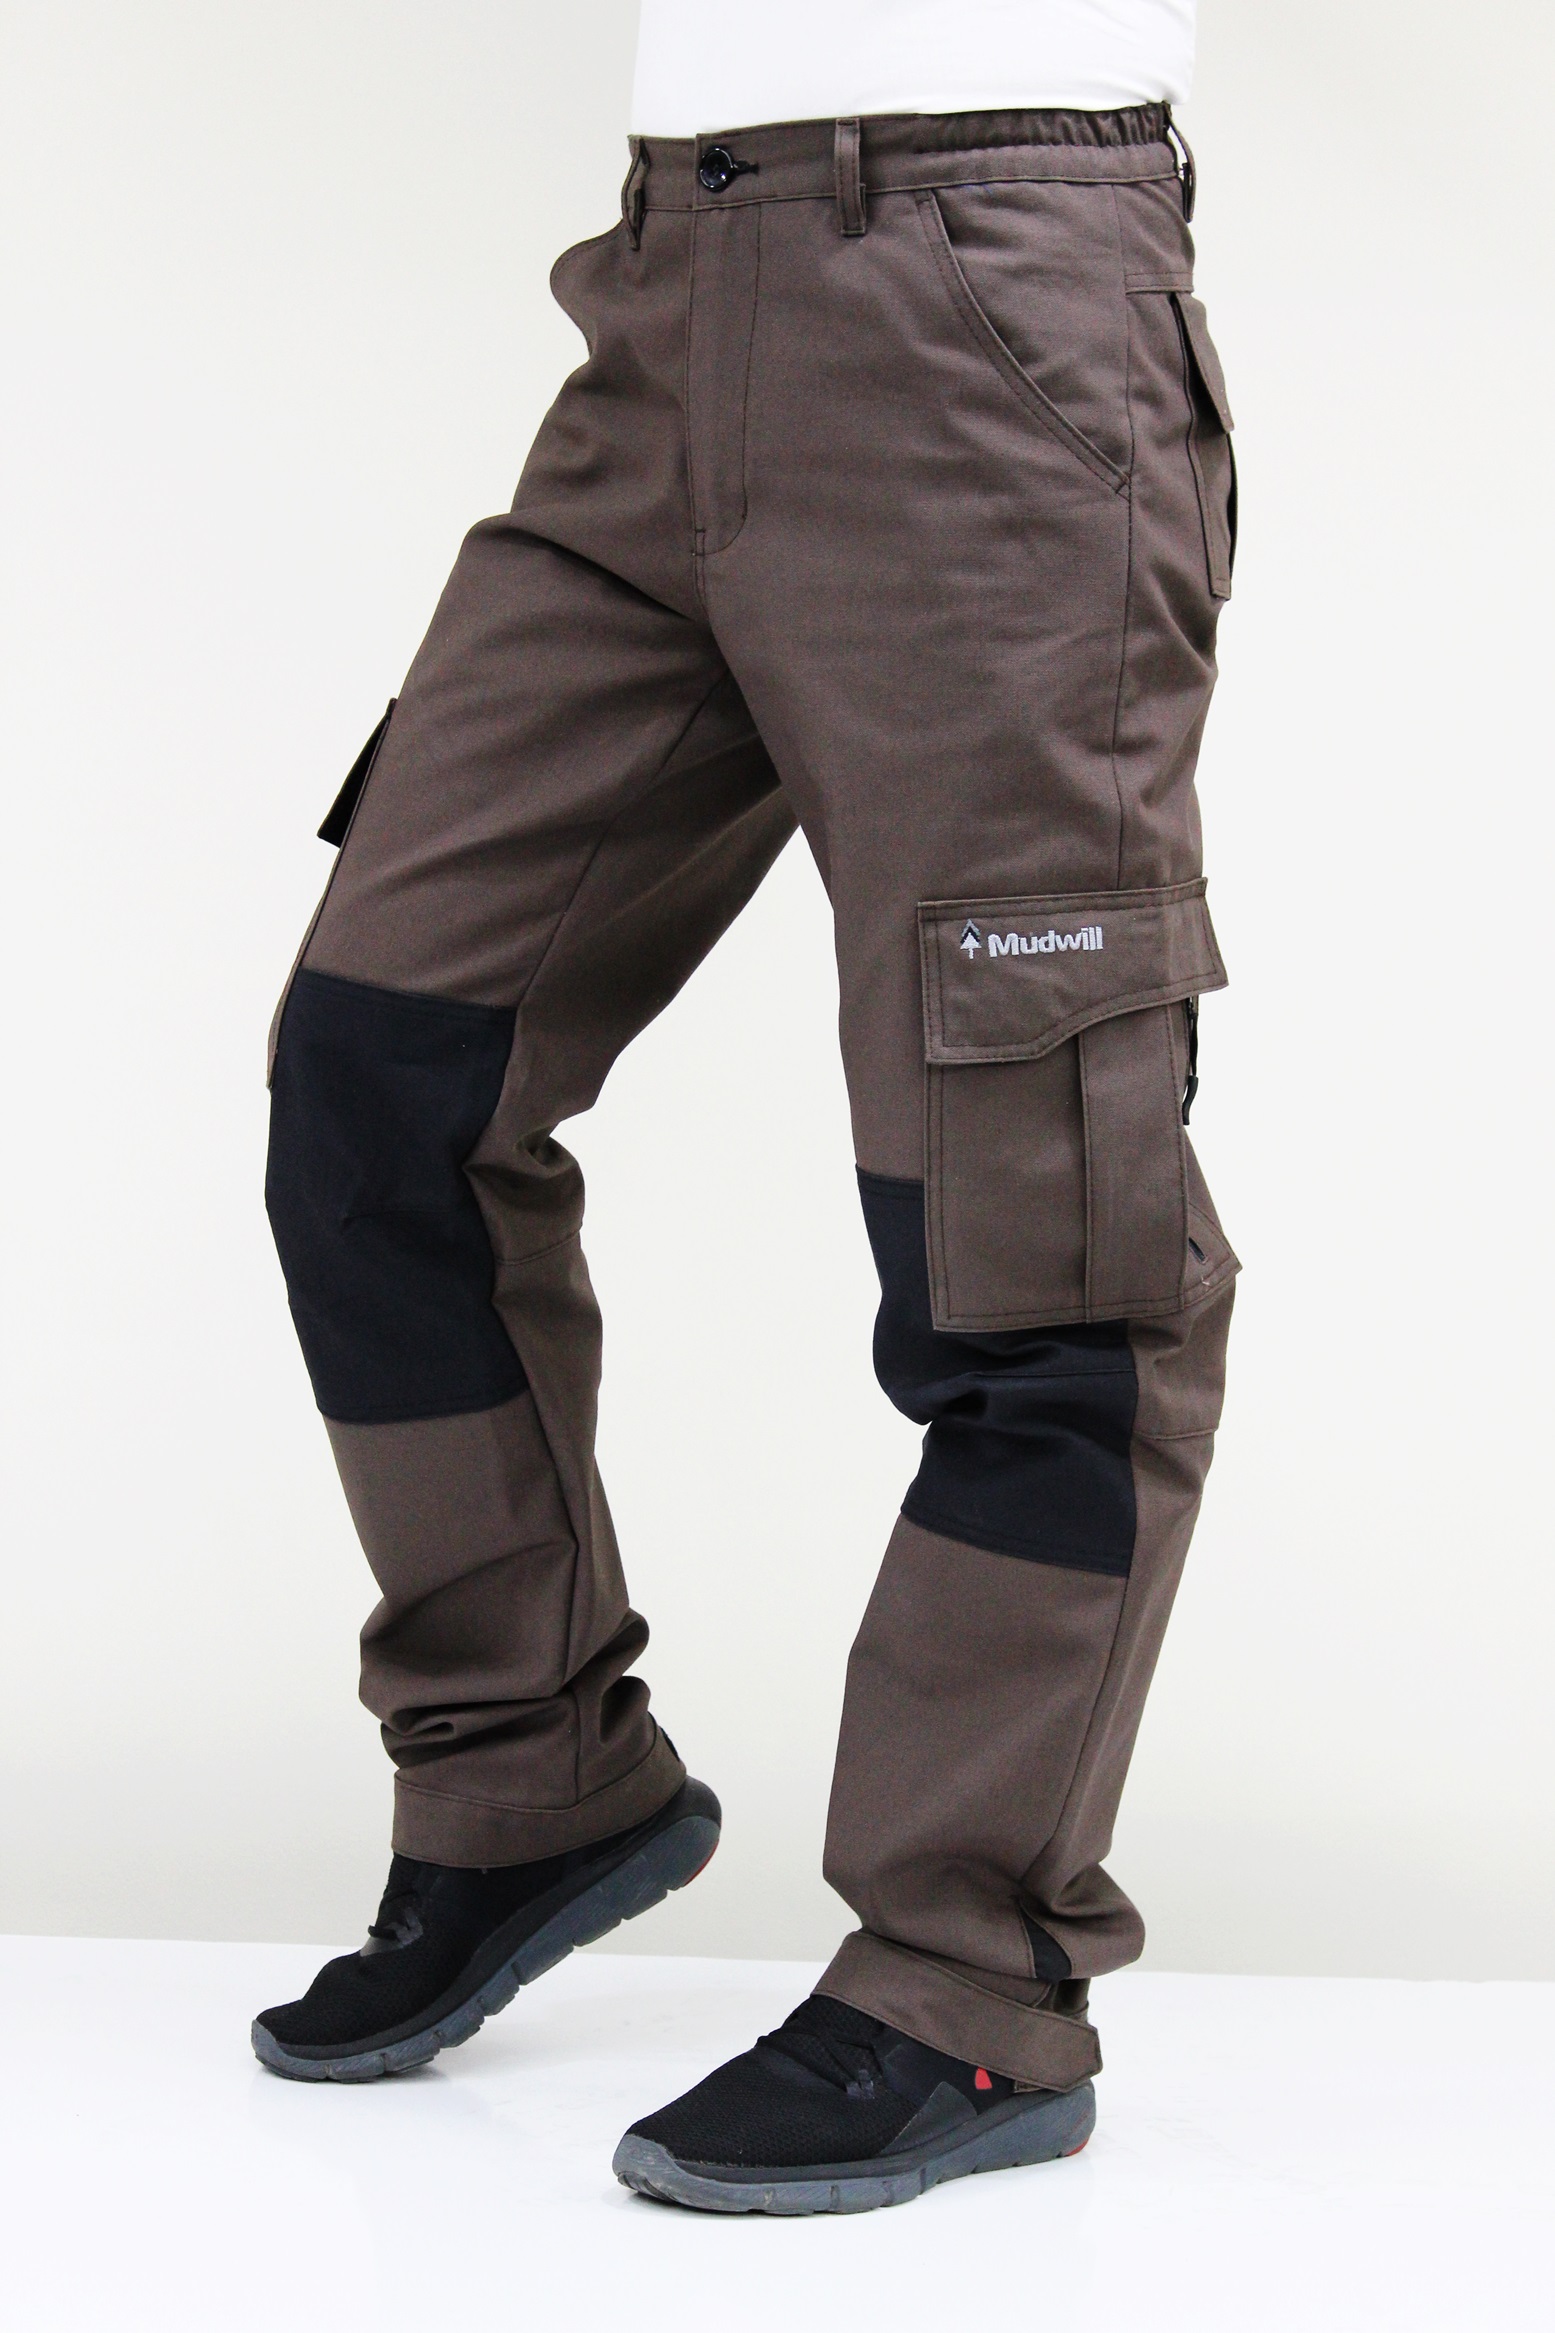 Mudwill Cordura Tactical Pantolon - Kahve Siyah